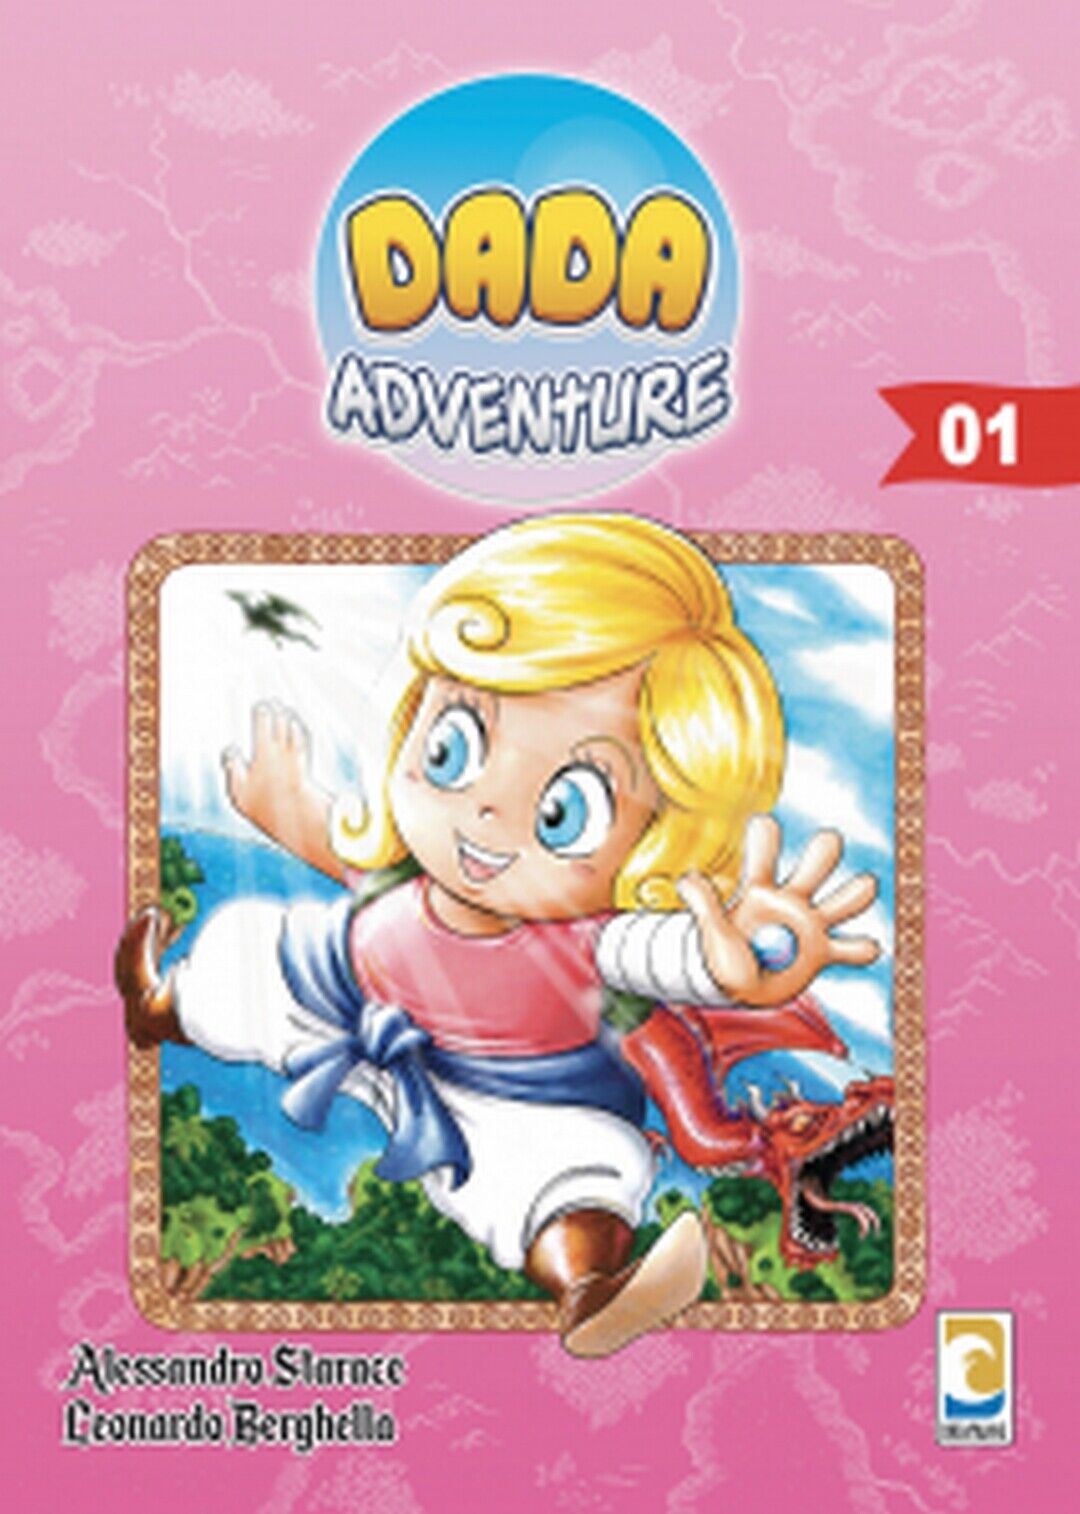 DADA ADVENTURE volume 1 variant cover